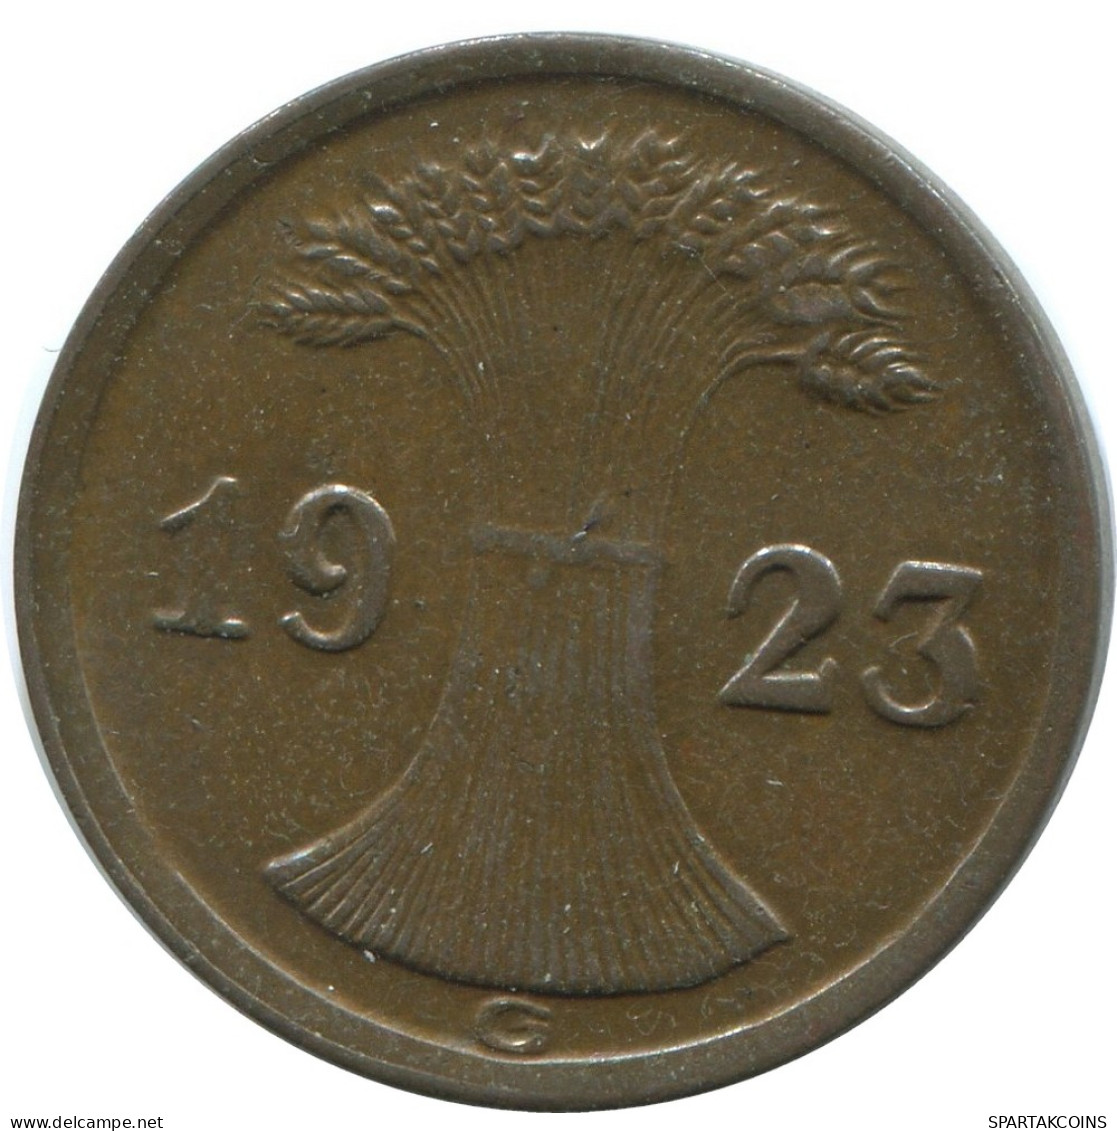 2 RENTENPFENNIG 1923 G ALEMANIA Moneda GERMANY #AE290.E - 2 Rentenpfennig & 2 Reichspfennig